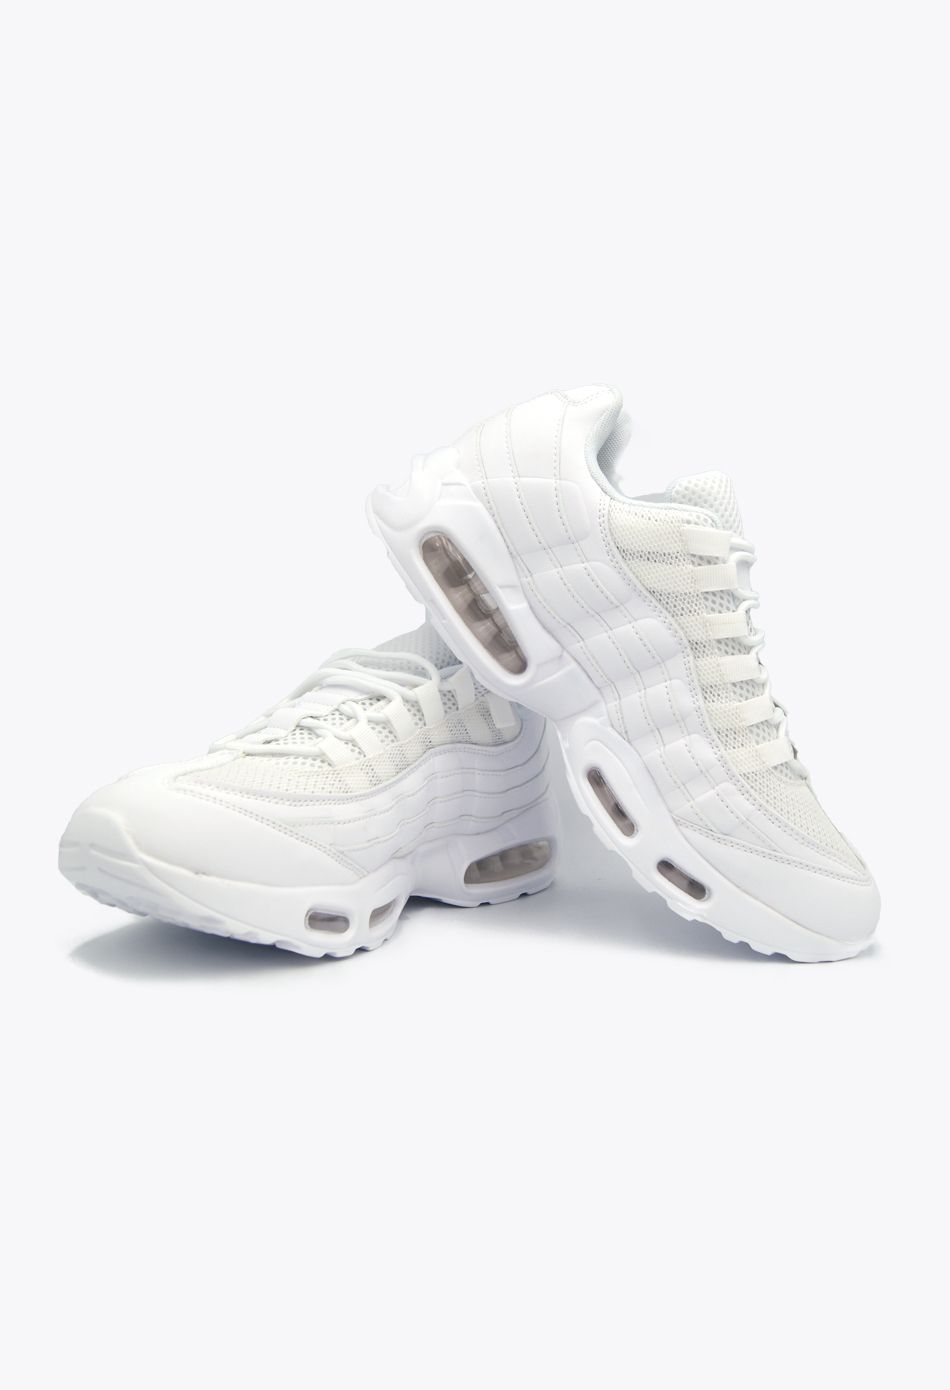 Ανδρικά Αθλητικά Παπούτσια για Τρέξιμο με αεροσόλα Λευκό / M-95-white ΑΘΛΗΤΙΚΑ & SNEAKERS joya.gr